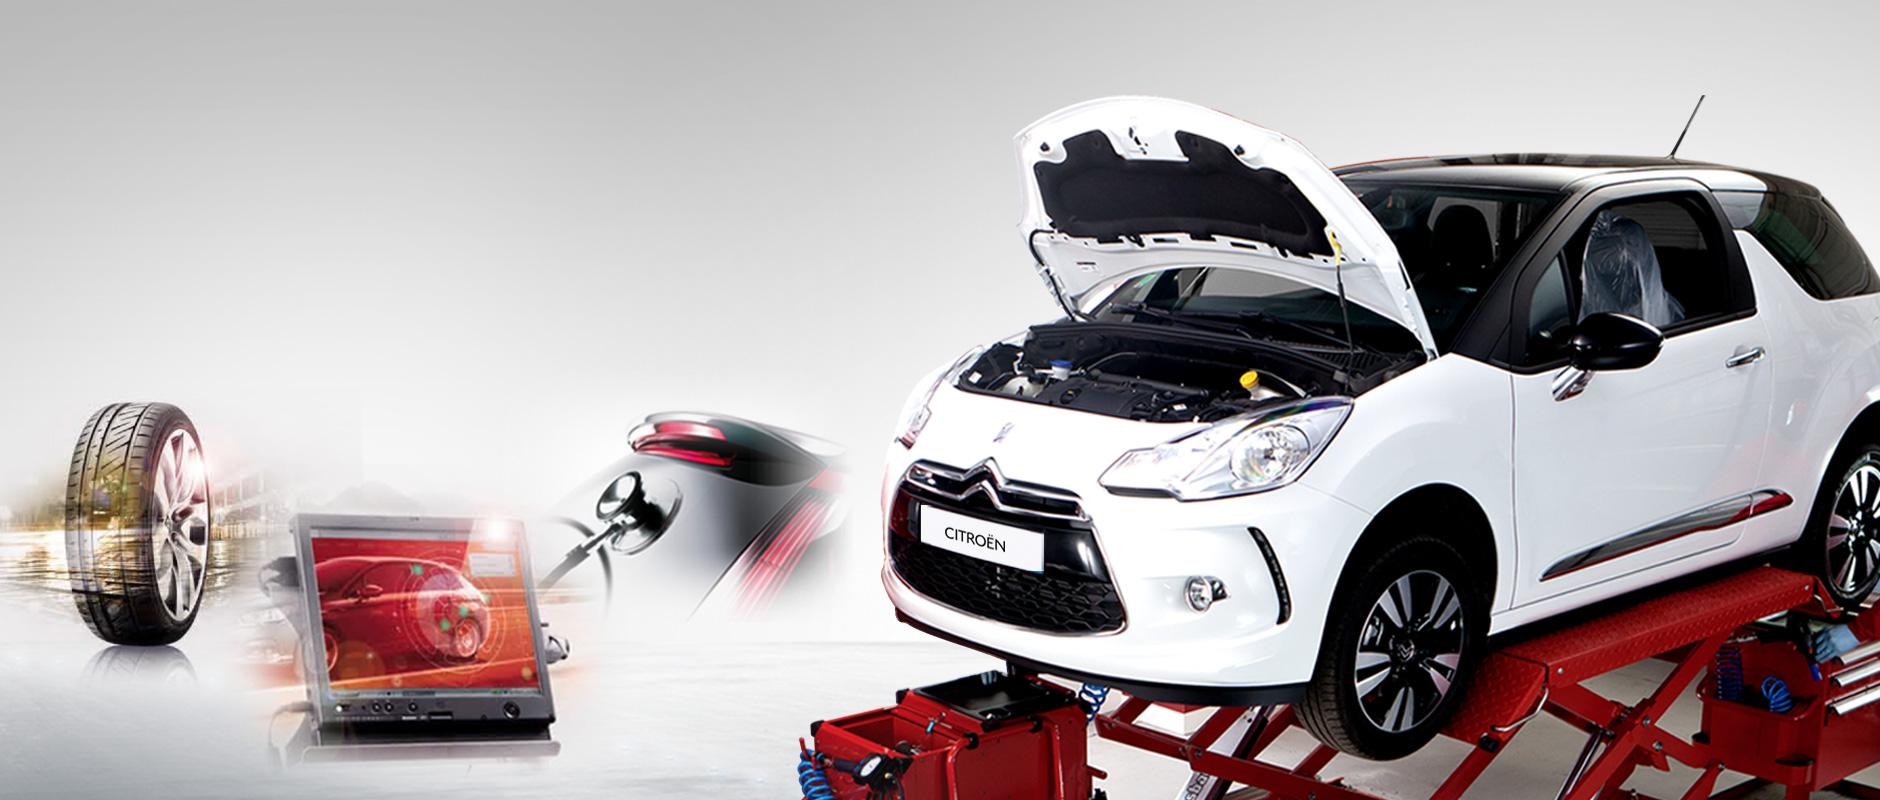 Les services Citroën pour les particuliers comme les professionnels